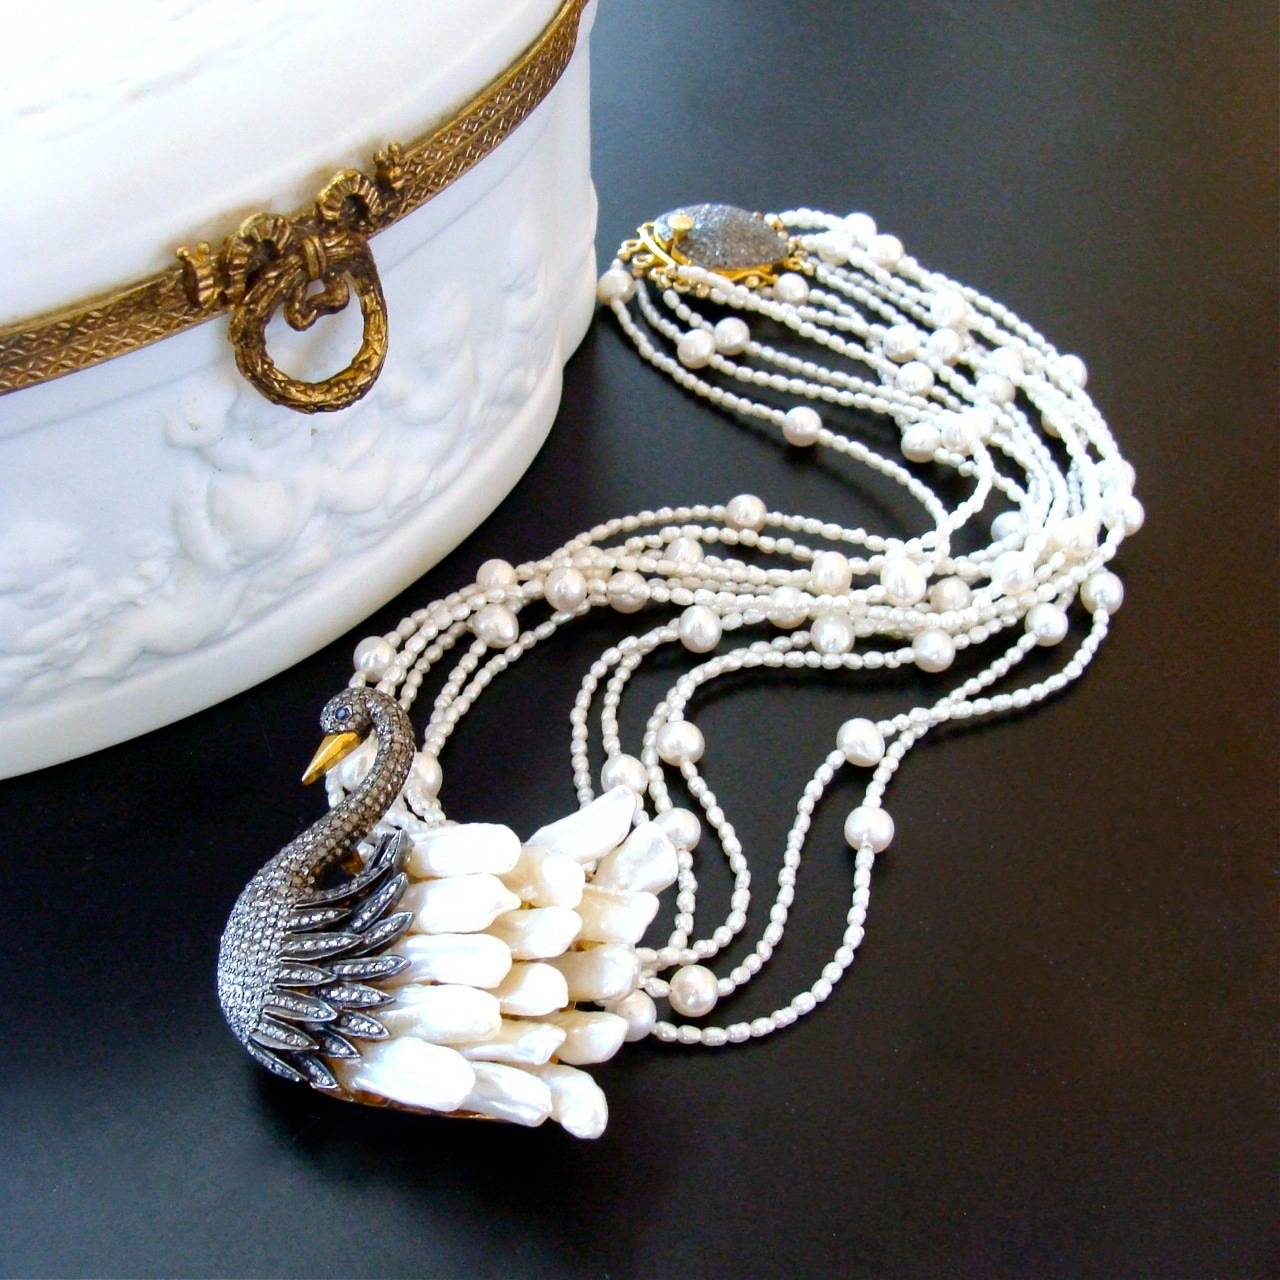 Mehrere Stränge aus winzigen Süßwasserperlen wurden mit größeren runden Perlen zu dieser zarten Torsade-Halskette zusammengefügt.  Der offensichtliche Blickpunkt ist der glitzernde, mit Diamanten besetzte Schwan, der mit länglichen Biwa-Perlen